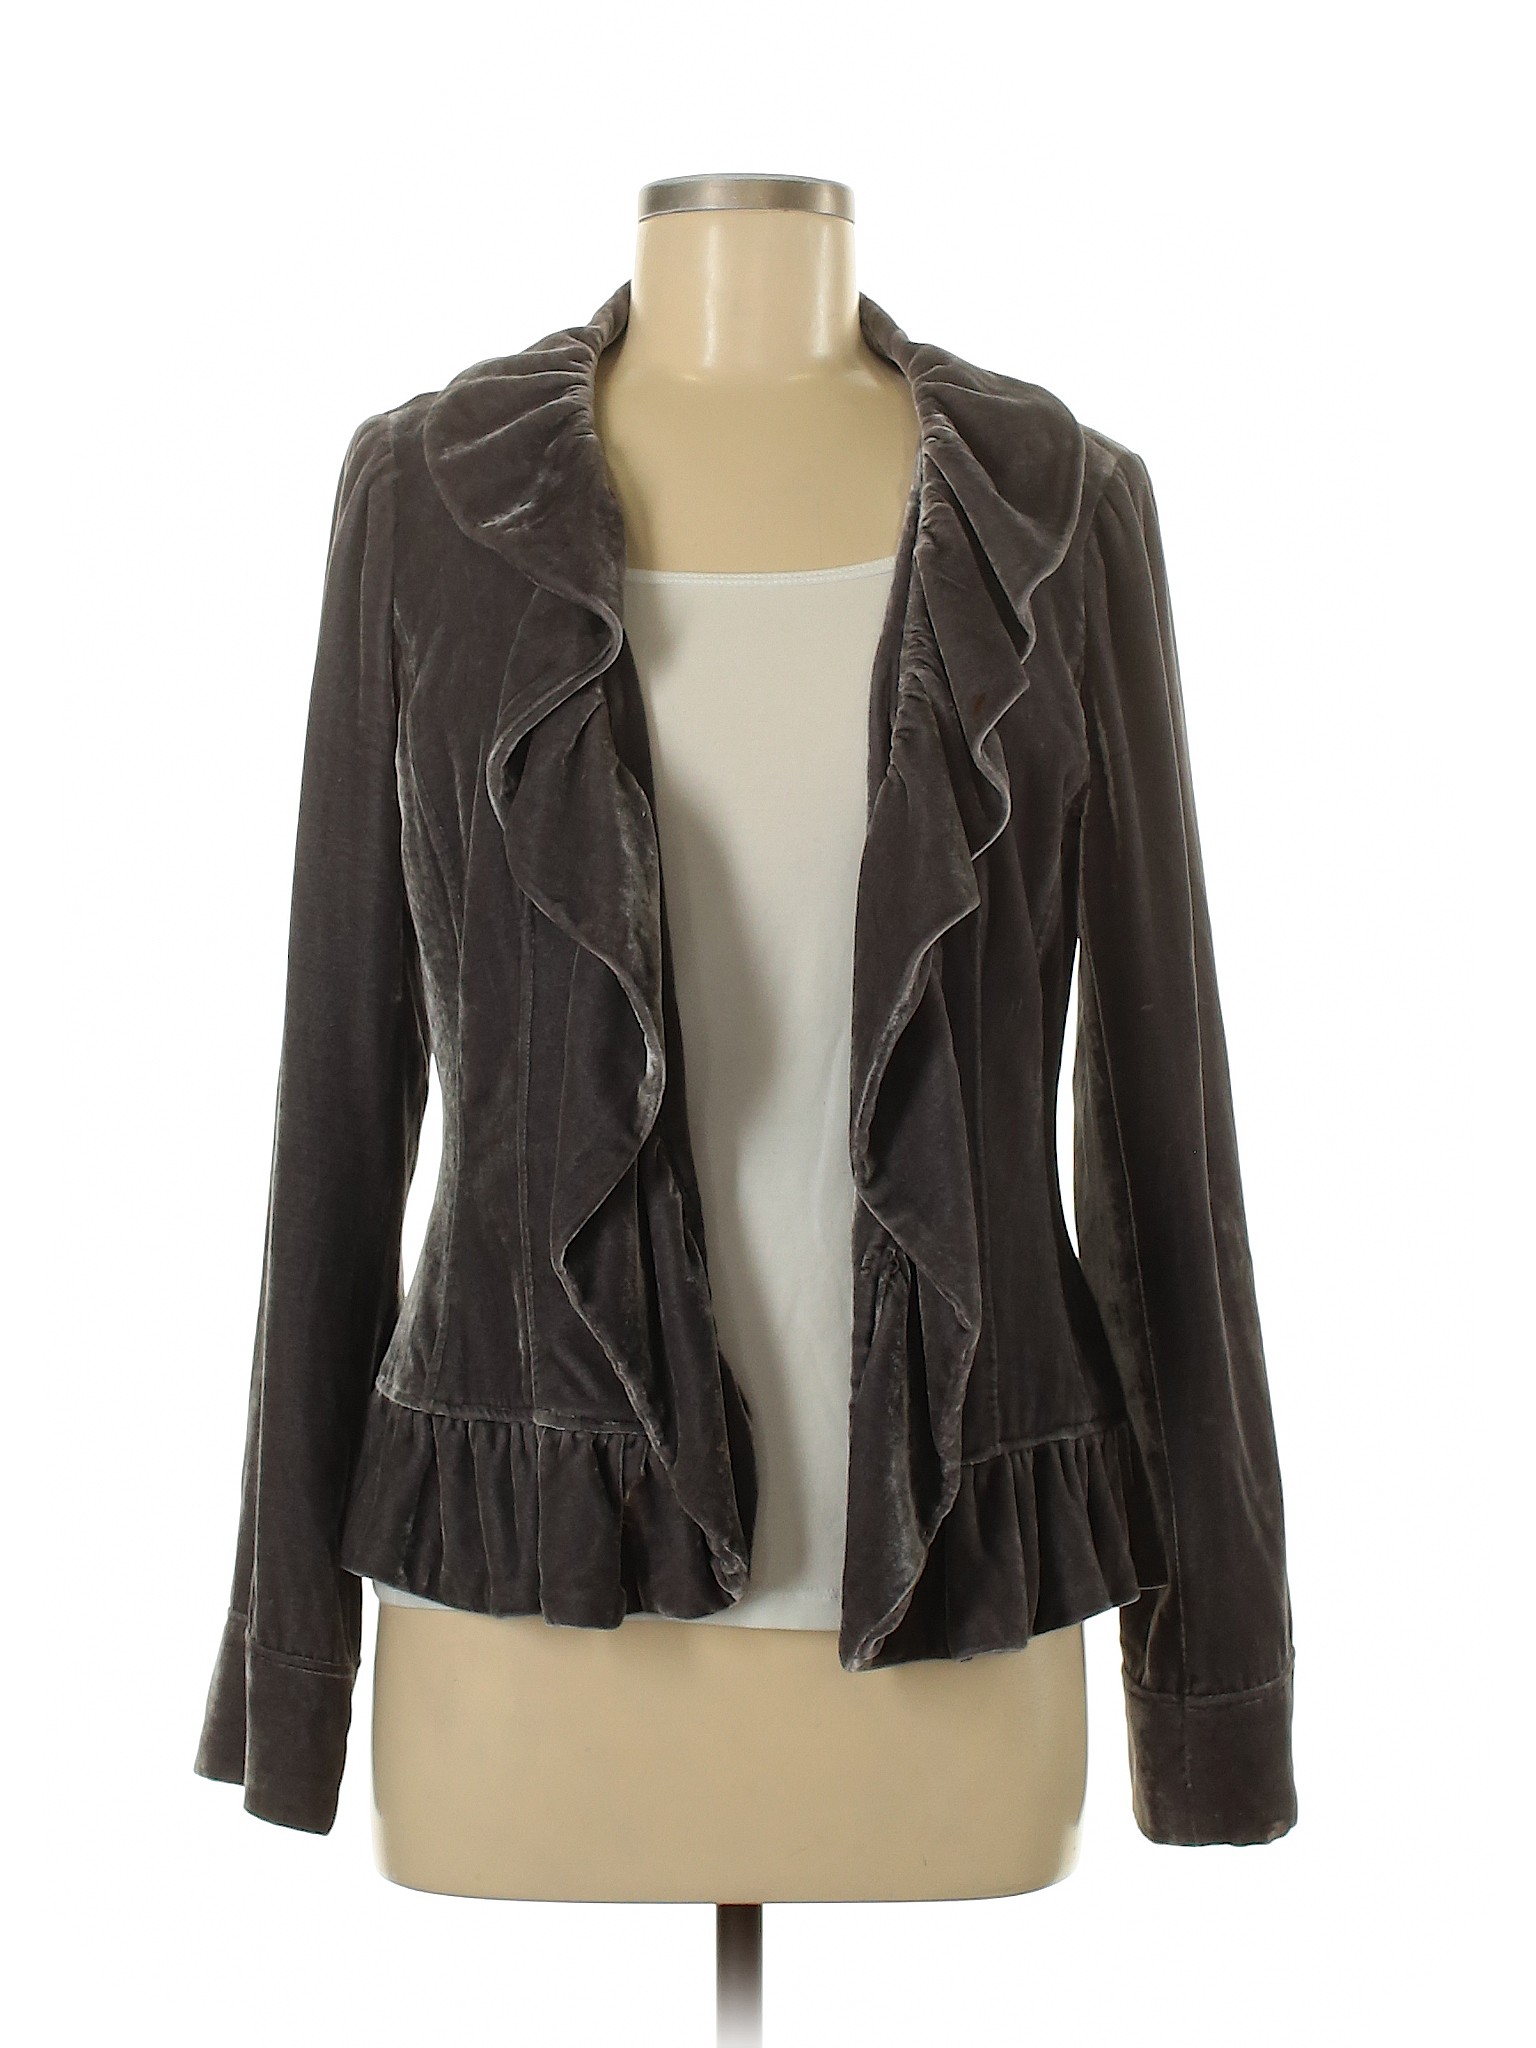 Saks Fifth Avenue Women Gray Jacket 8 | eBay